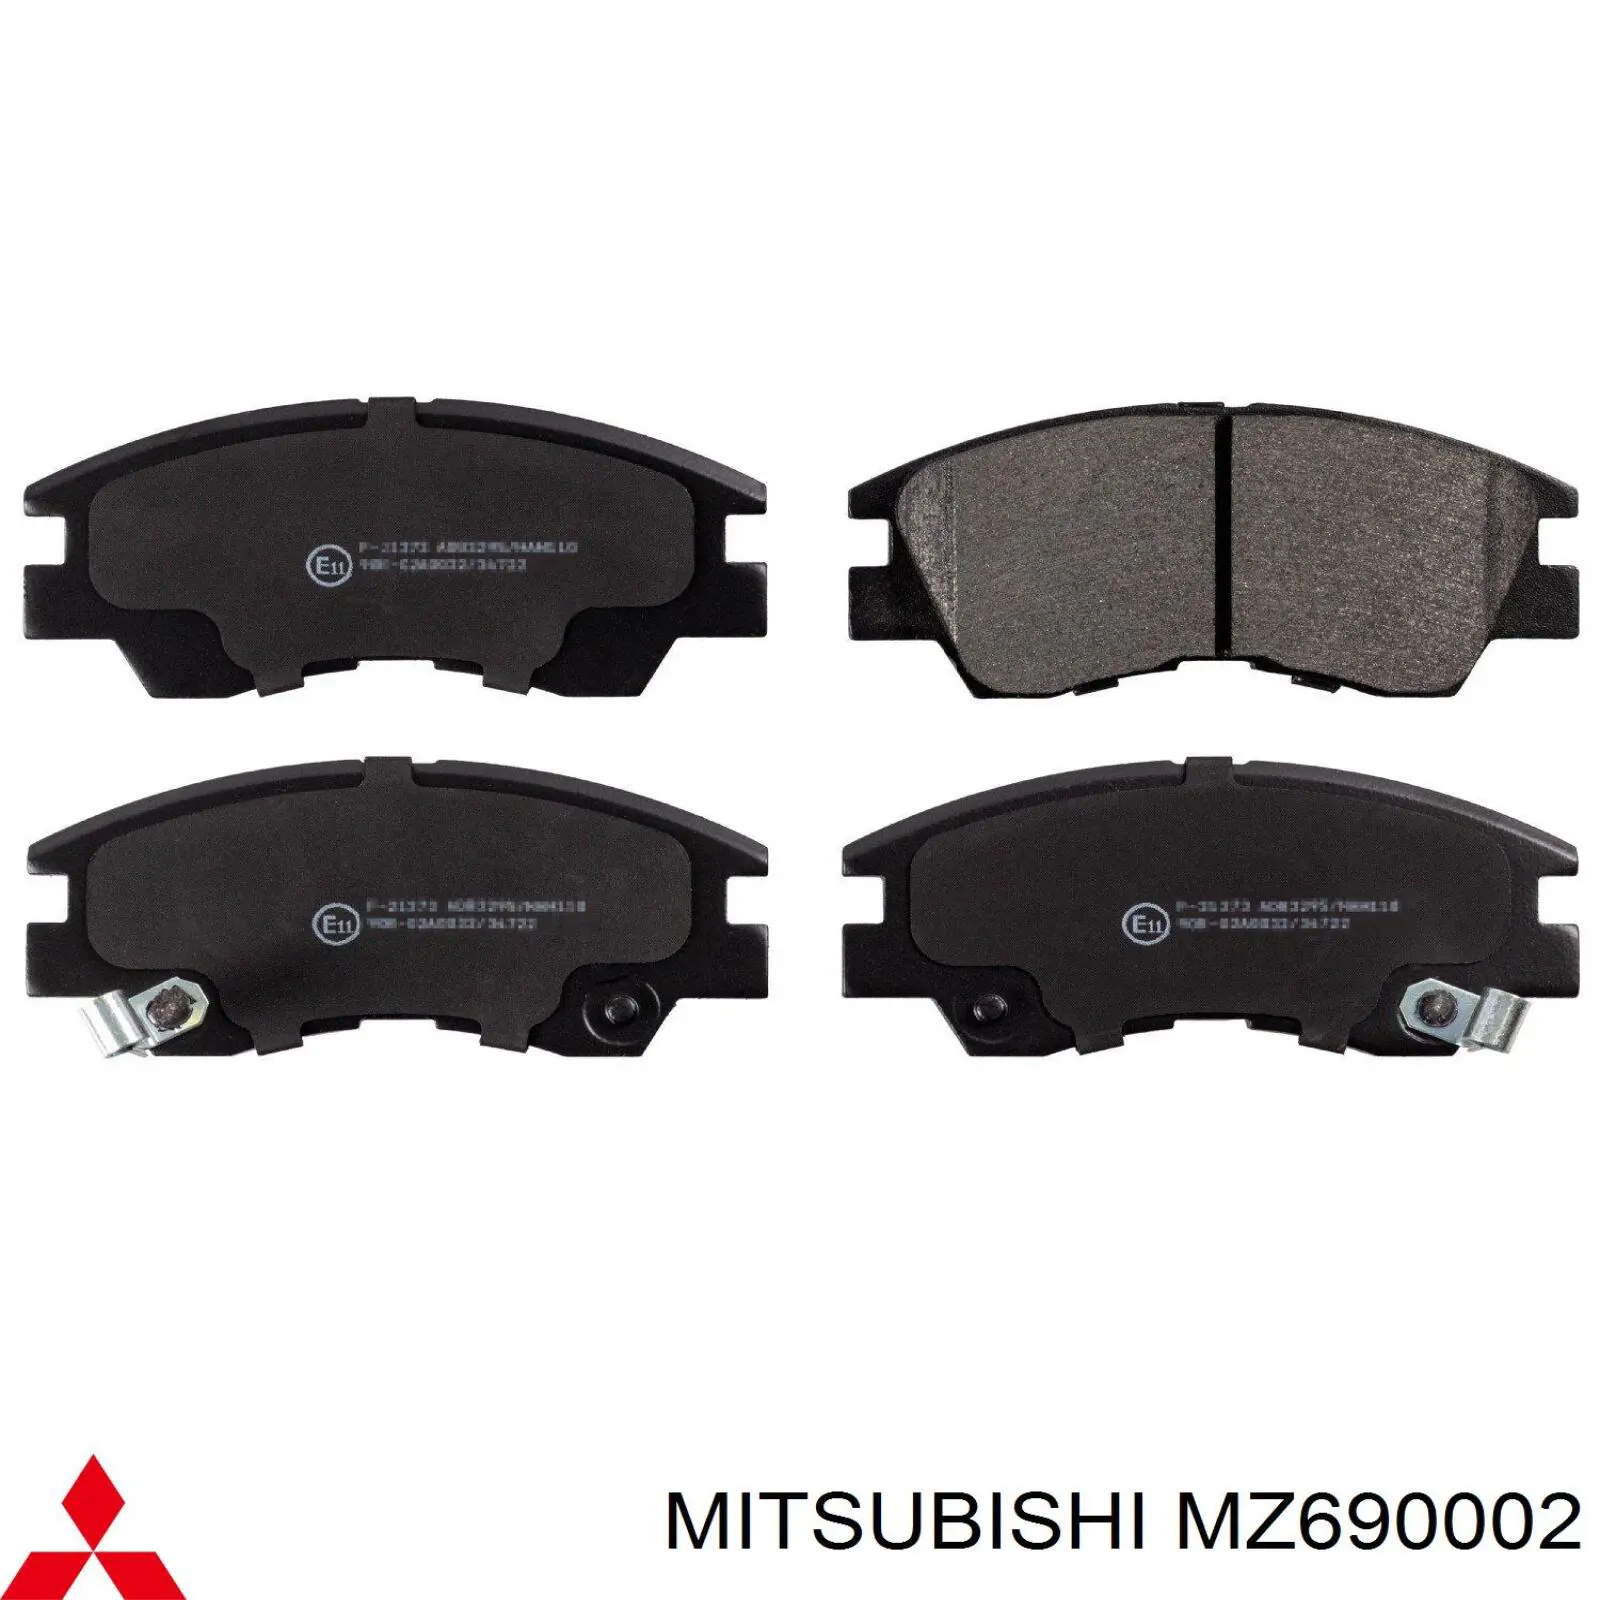 MZ690002 Mitsubishi колодки тормозные передние дисковые